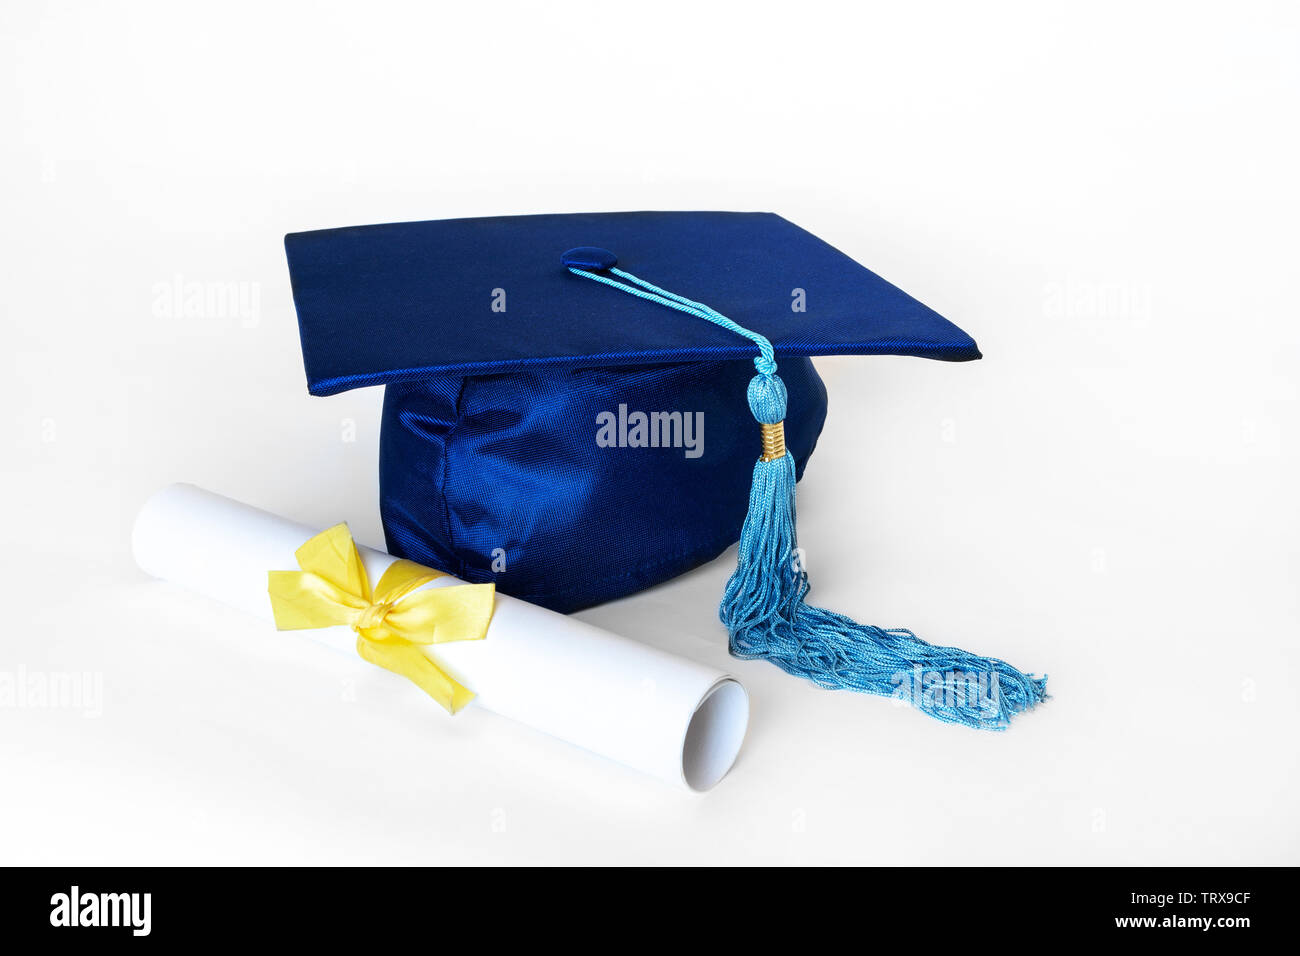 Graduation cap bleu ou mortier avec blue tassel et diplôme avec ruban jaune, isolé sur fond blanc. Banque D'Images